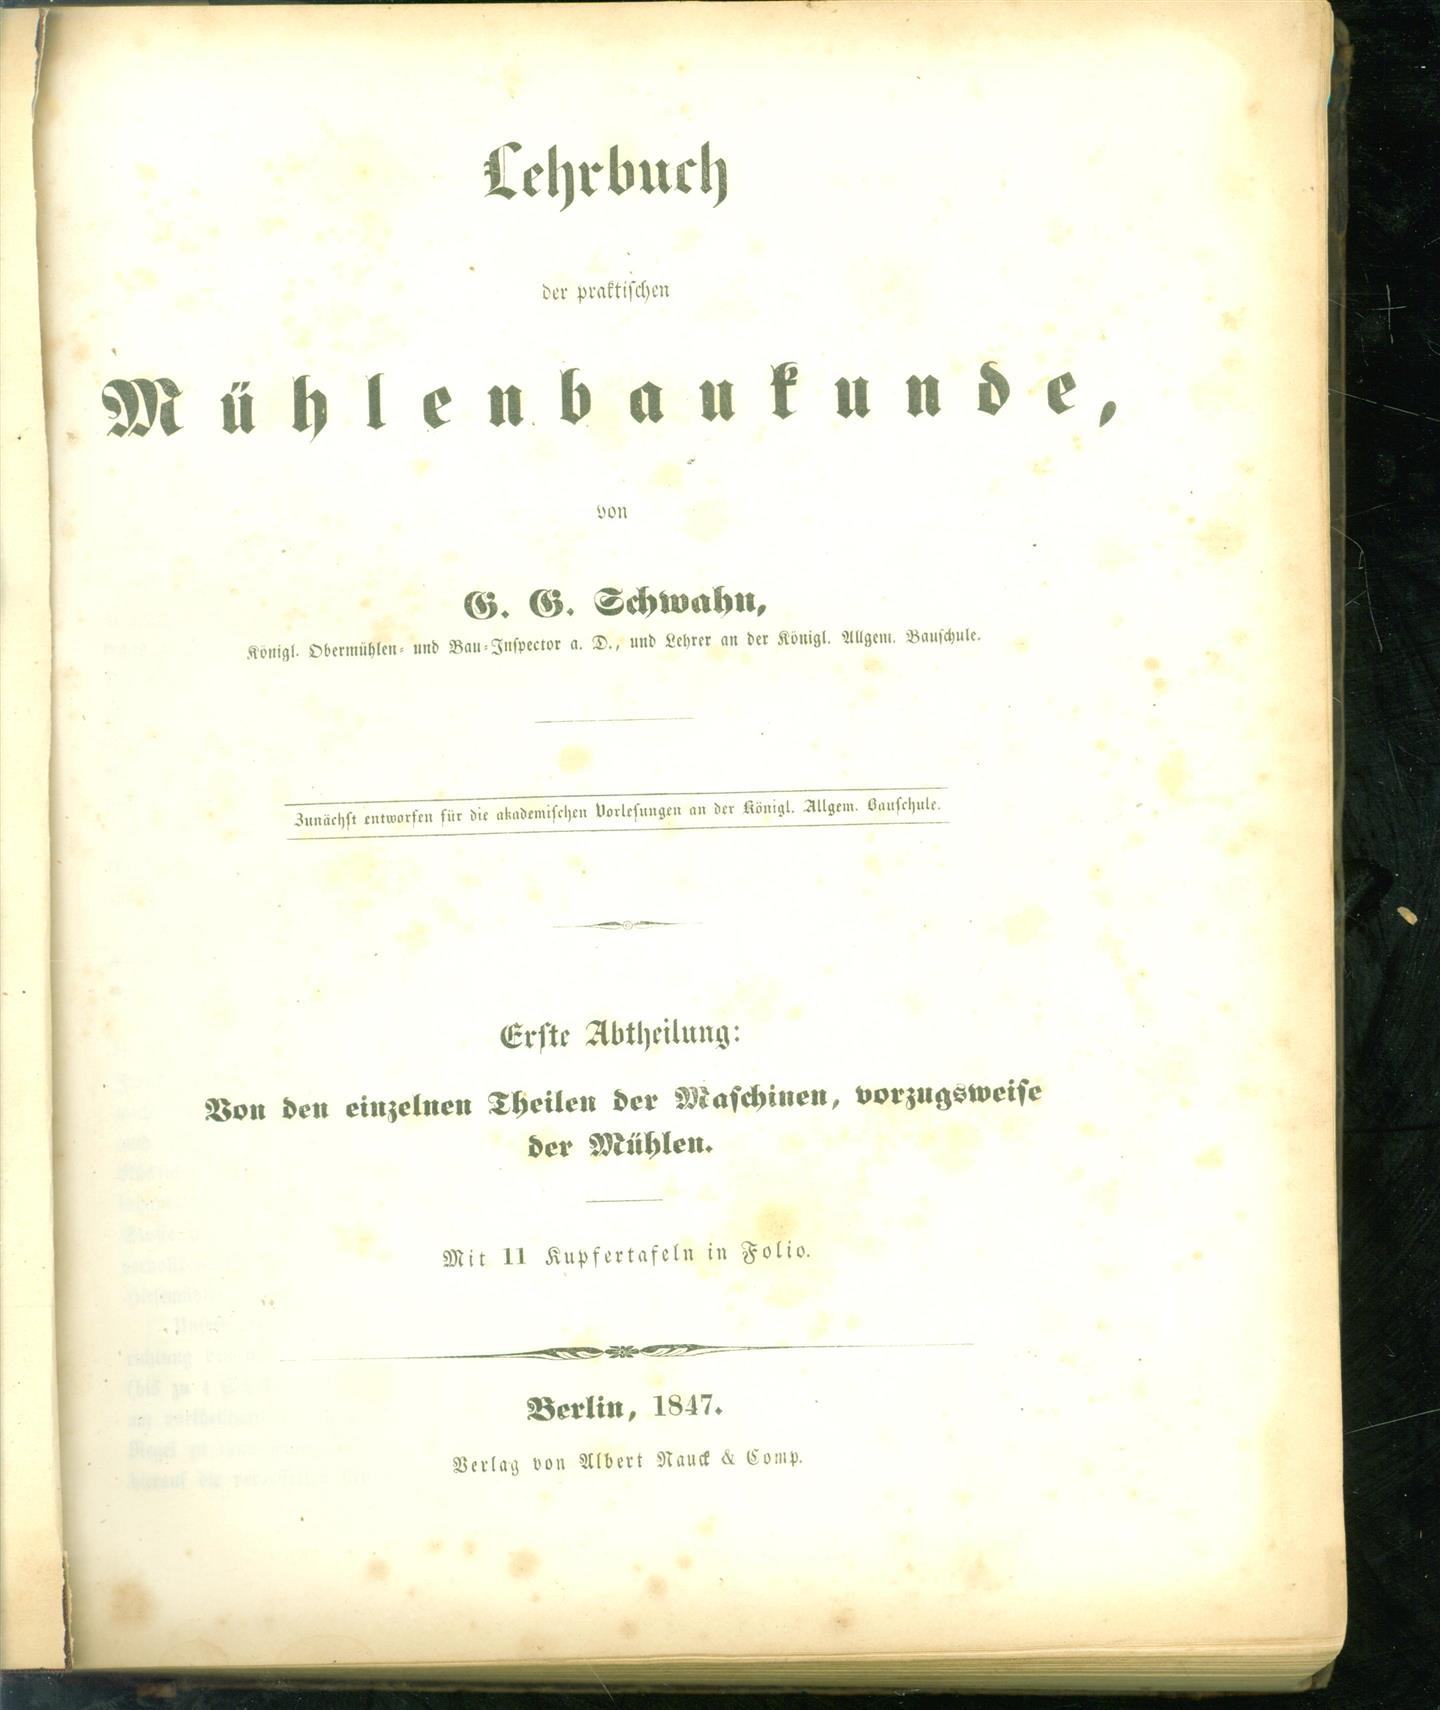 G. G. Schwahn - lehrbuch der practischen mhlenbaukunde